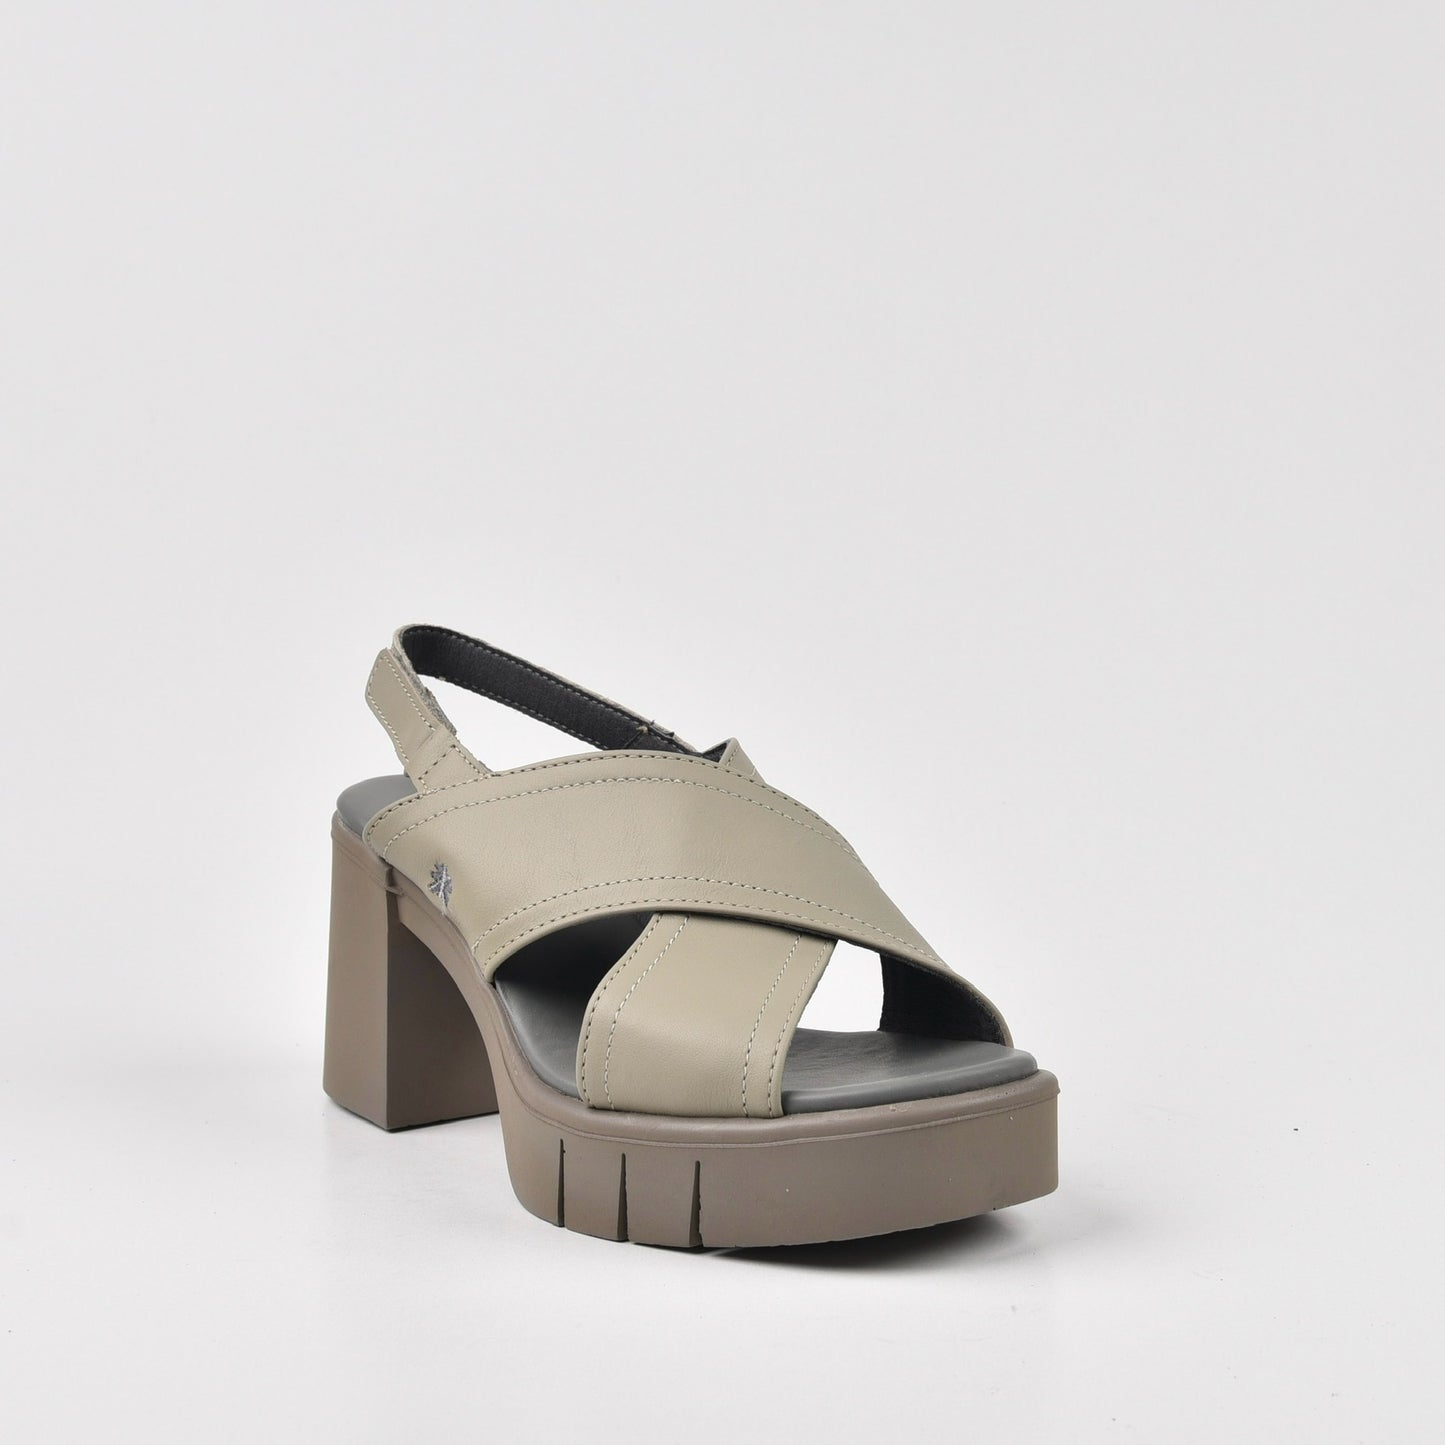 Art Spanish Medium-Heel Sandal for Women in Gray .